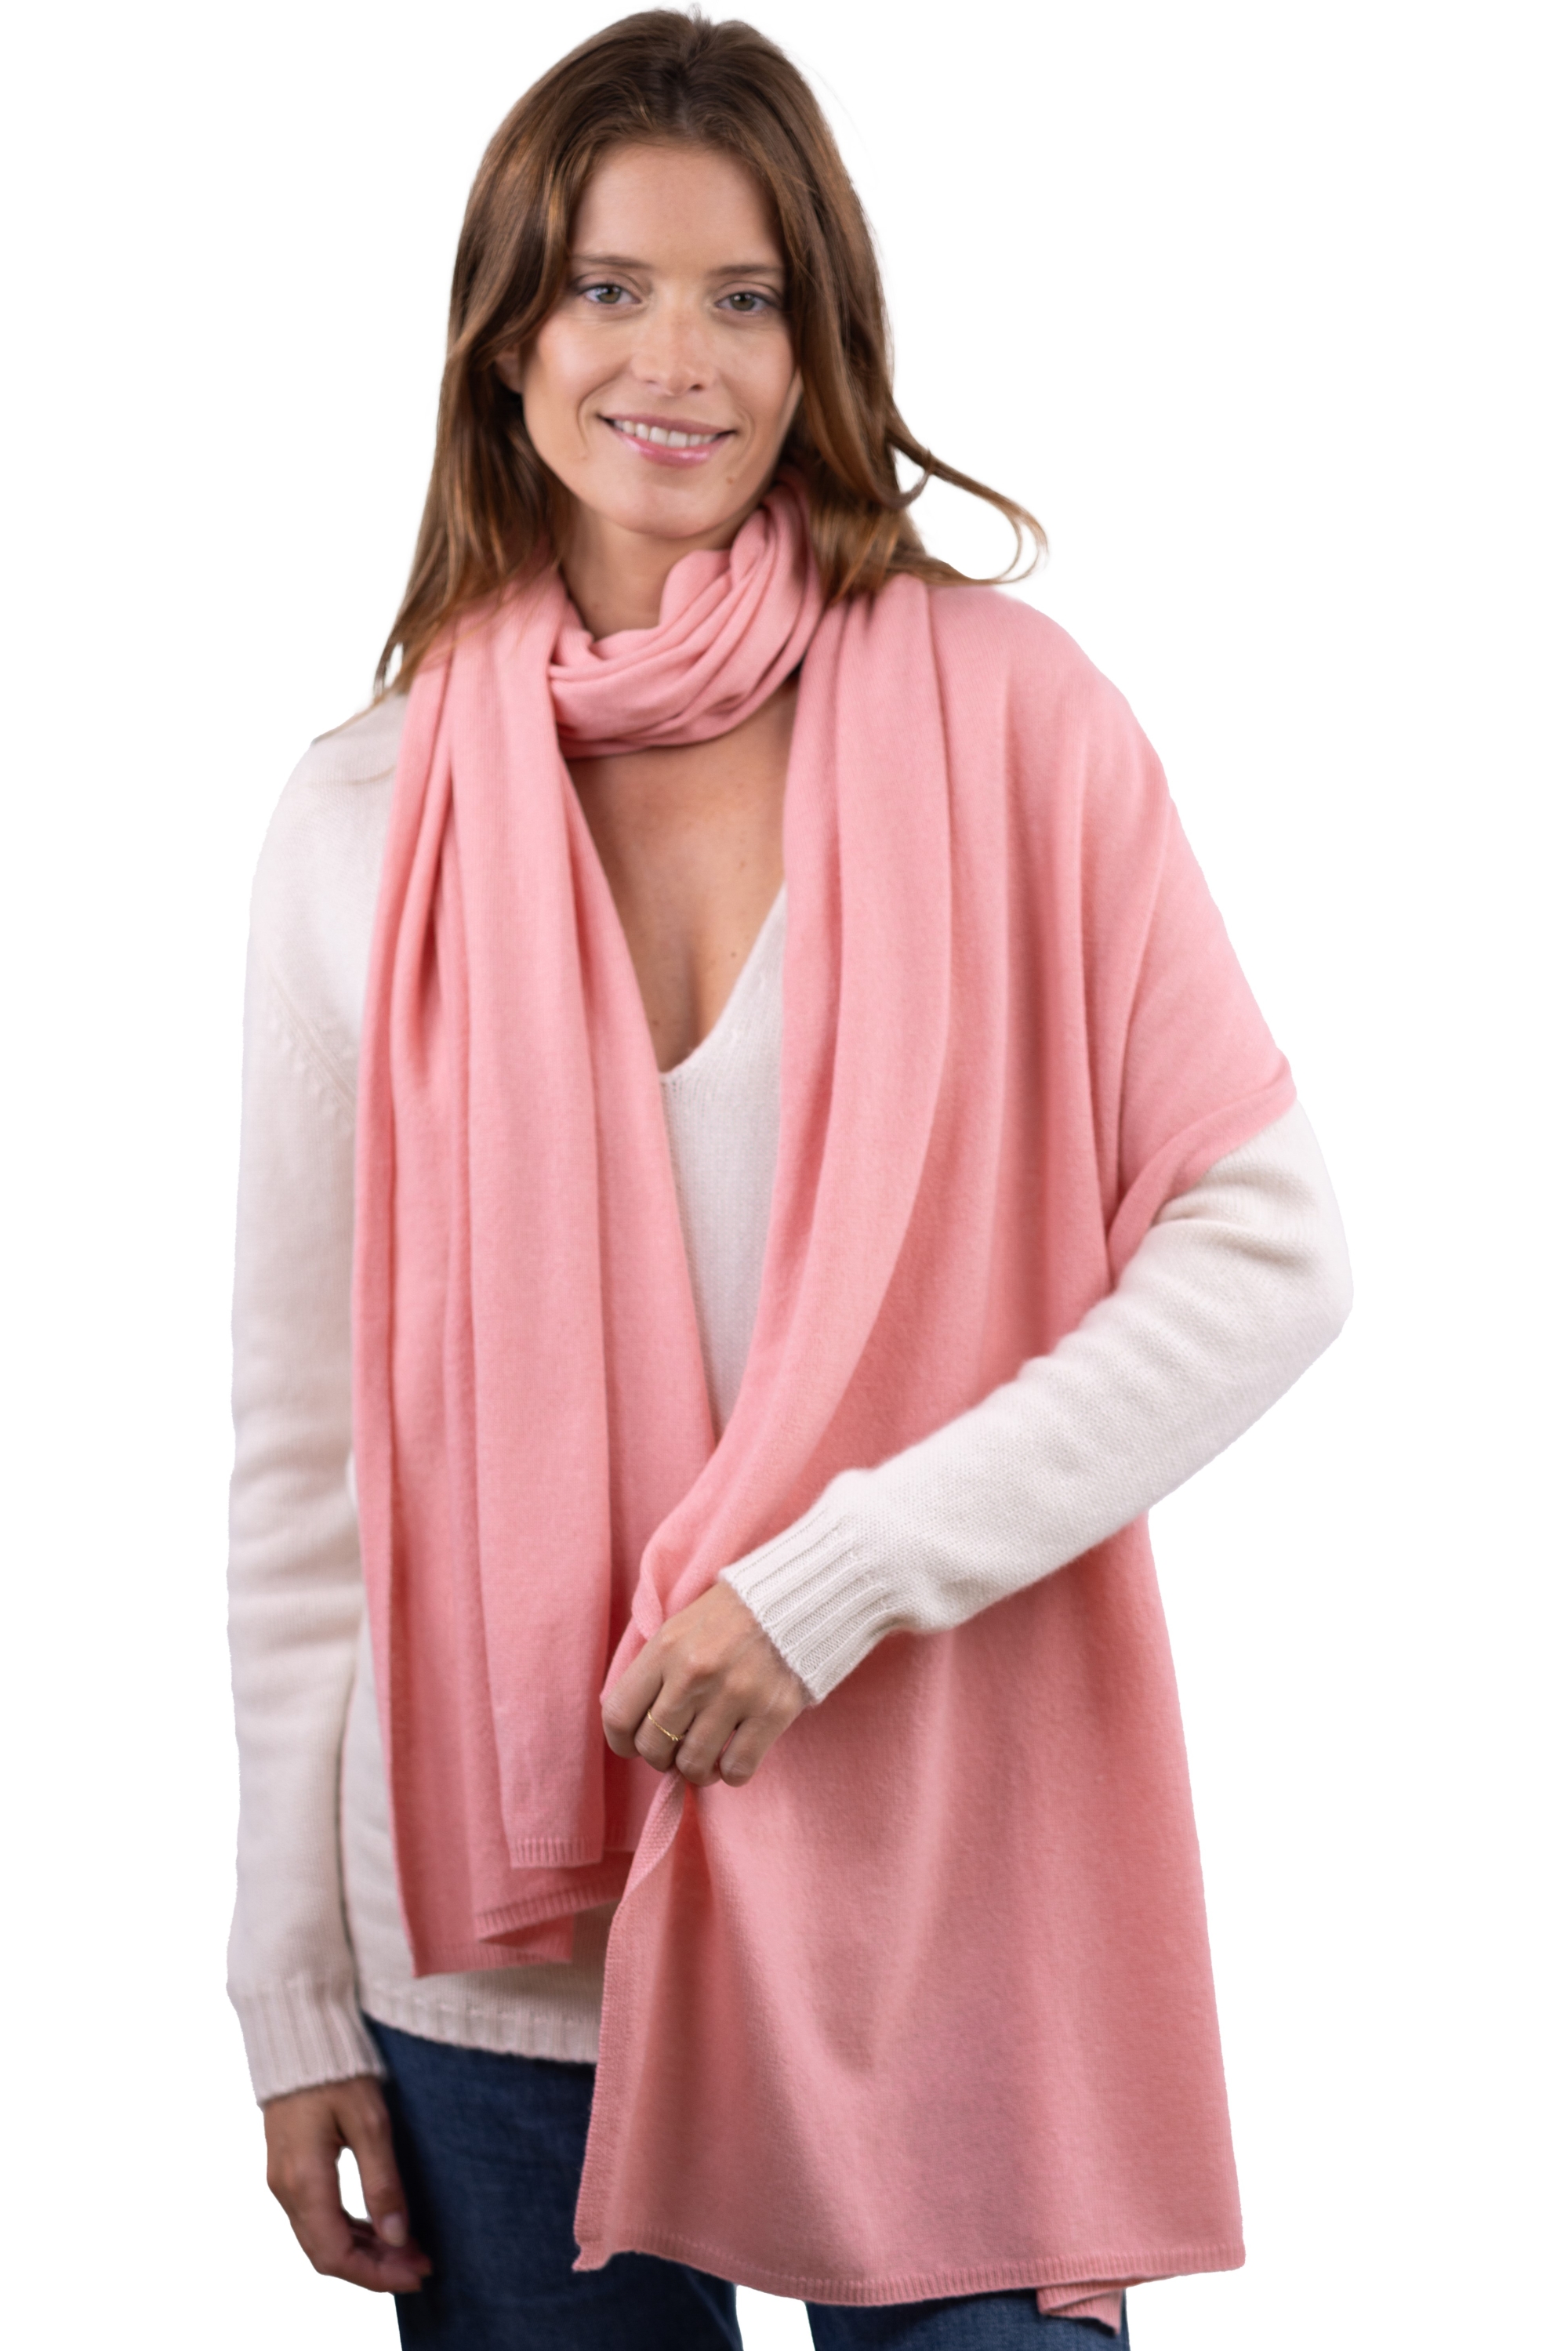 Cashmere accessories scarf mufflers wifi tea rose 230cm x 60cm